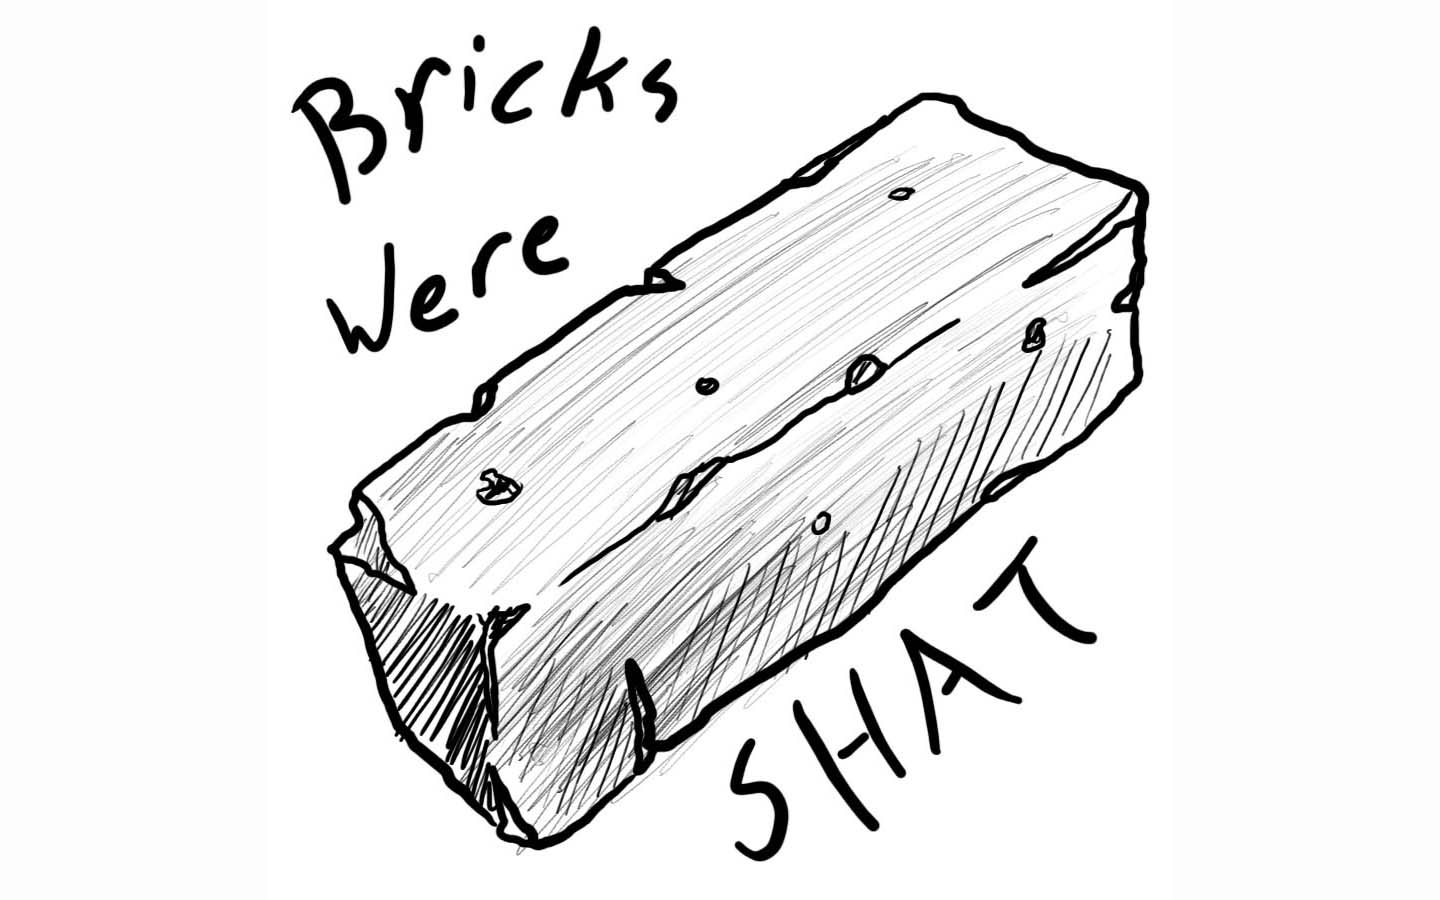 bricks were shat